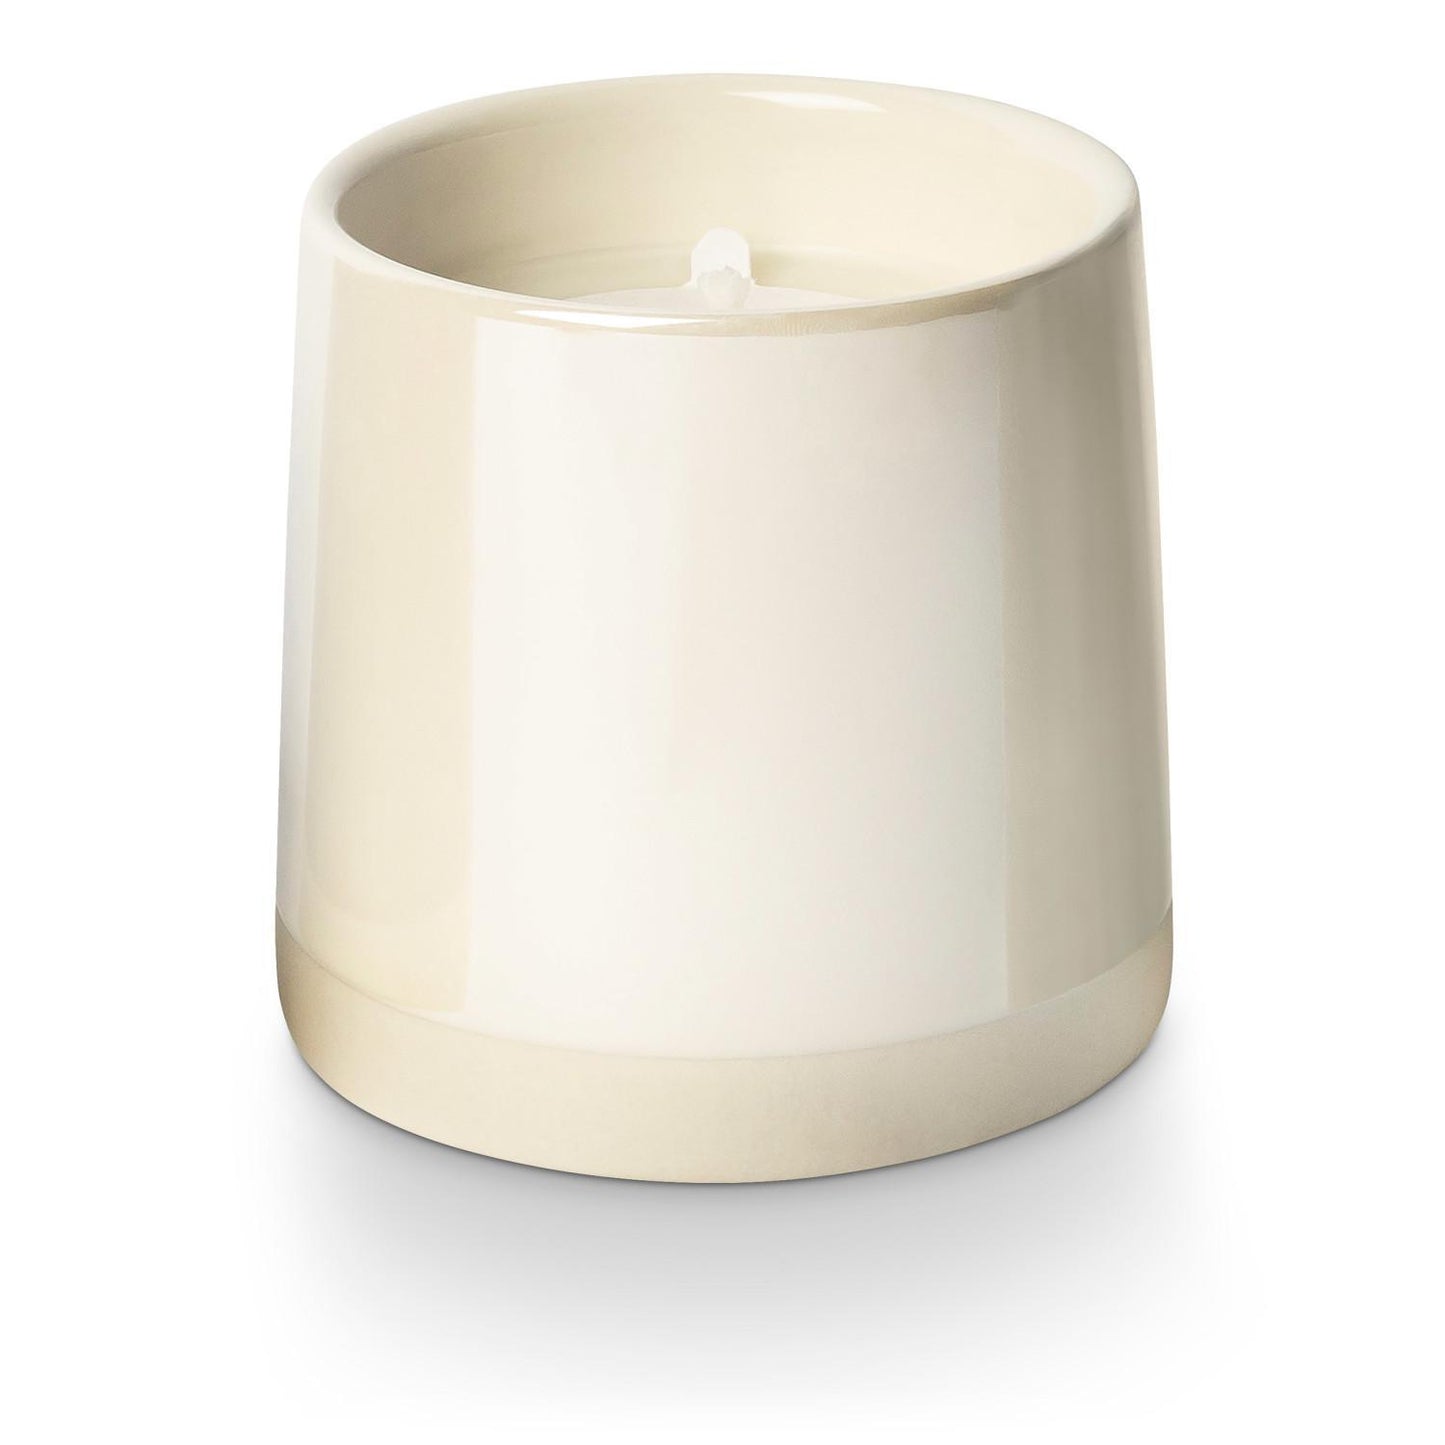 Winter White Shine Ceramic Candle